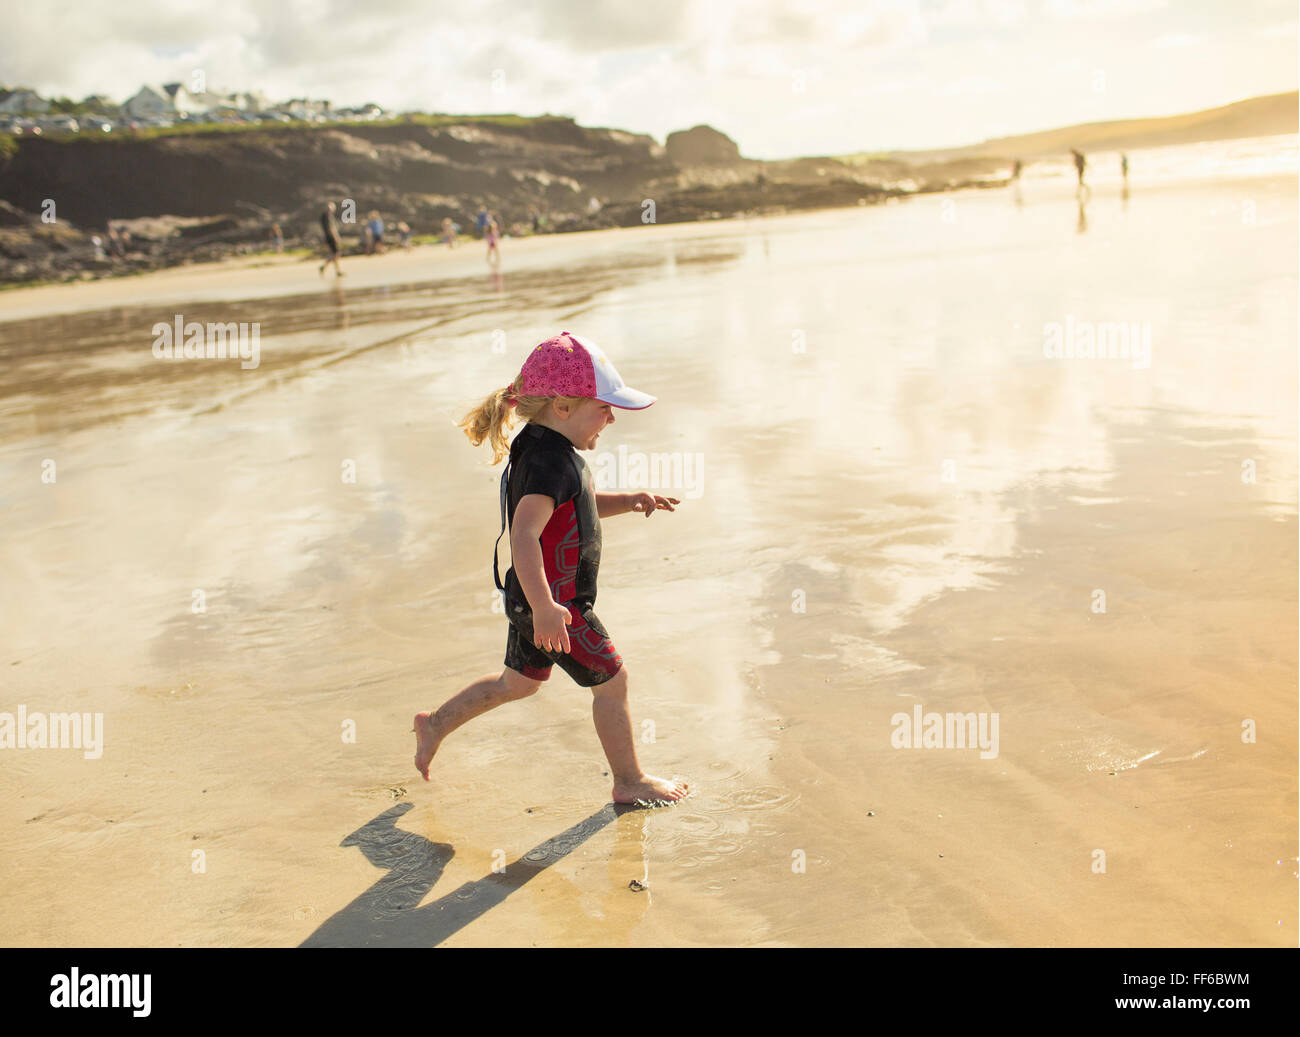 Un enfant dans une combinaison et chapeau running on sand Banque D'Images